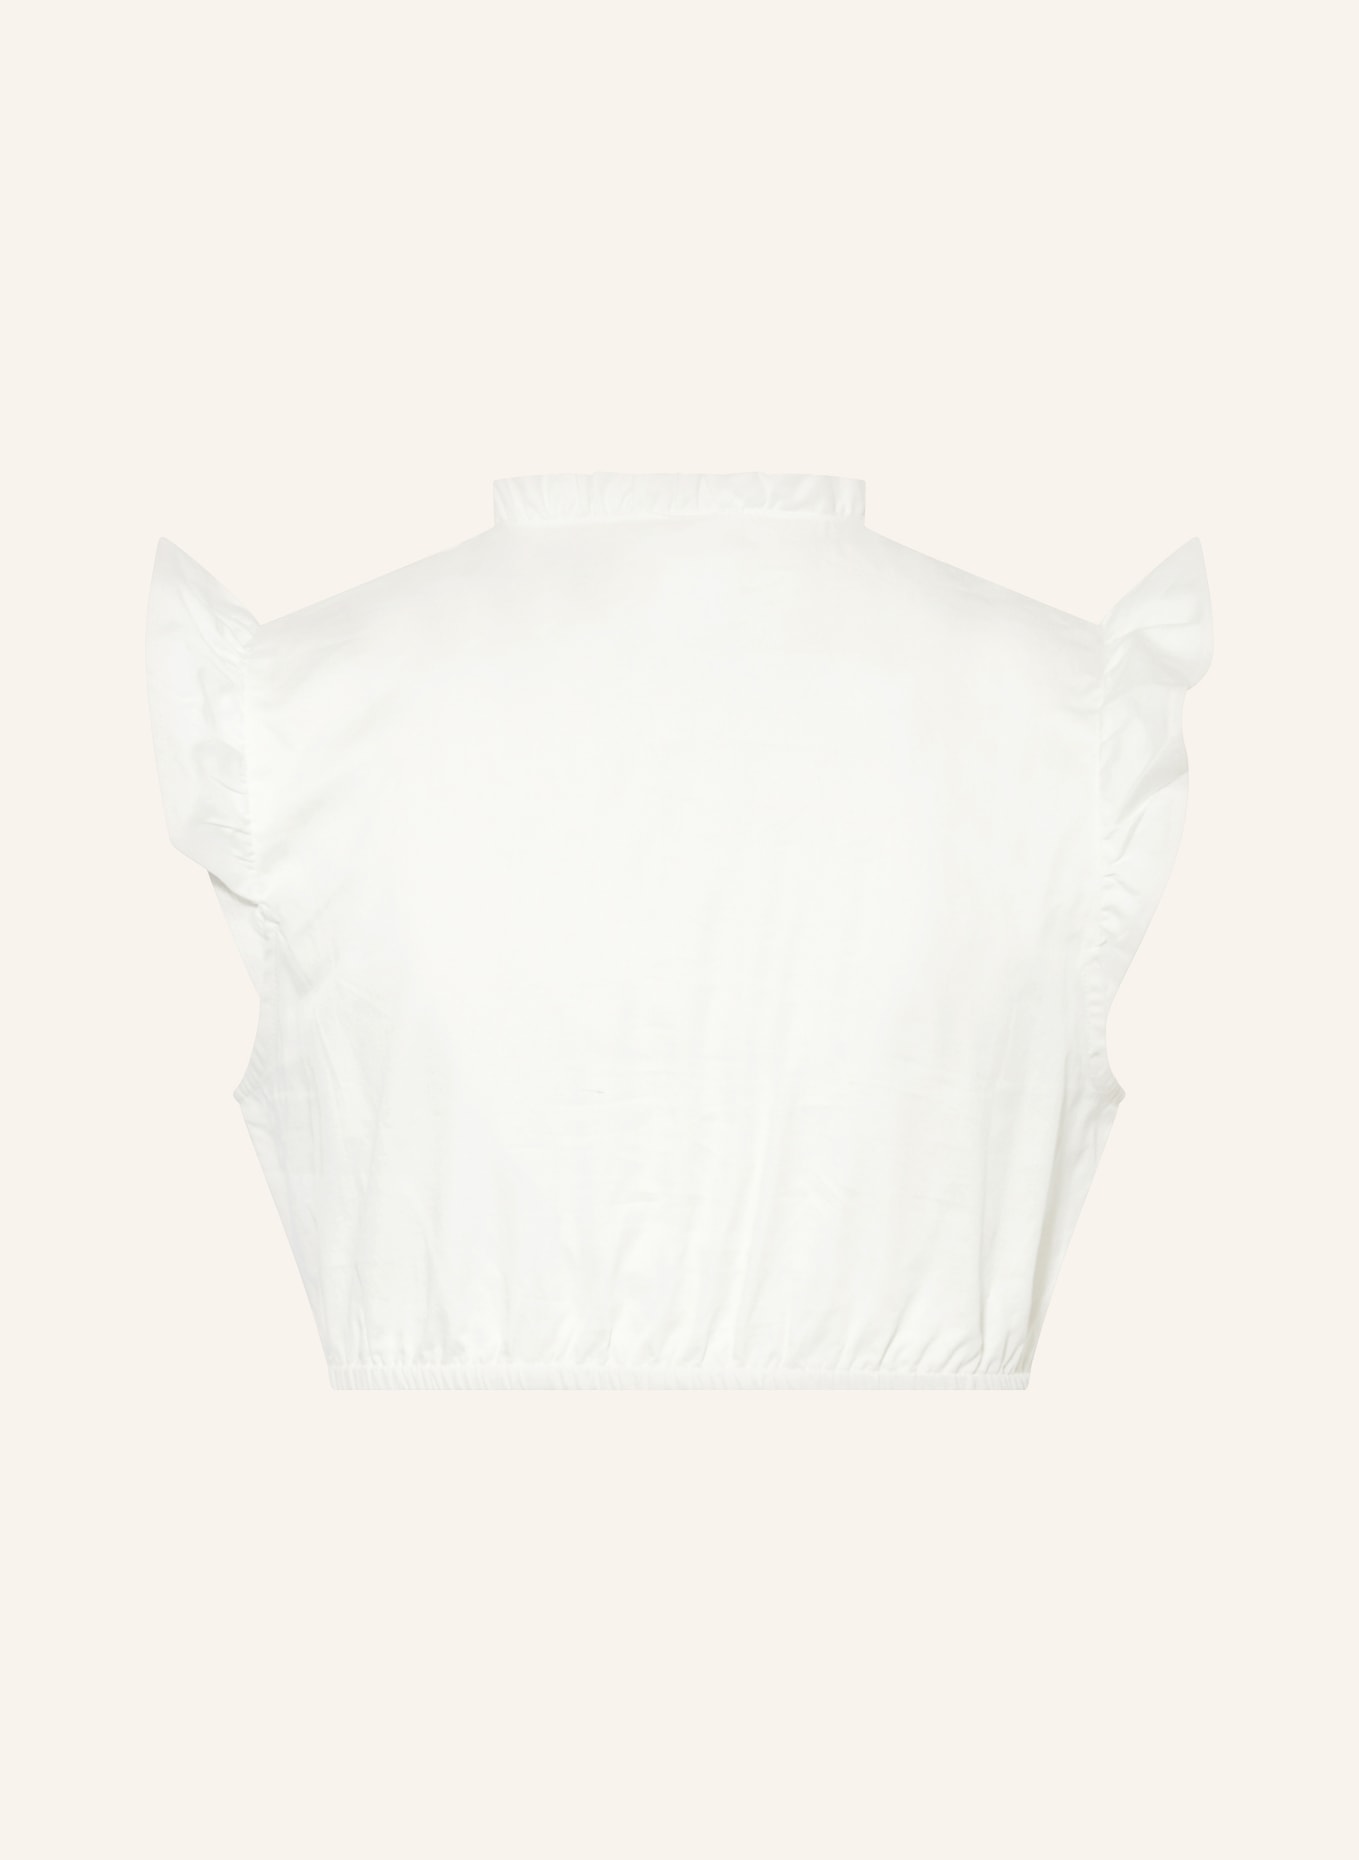 KRÜGER Dirndl blouse EFIGENIA, Color: ECRU (Image 2)